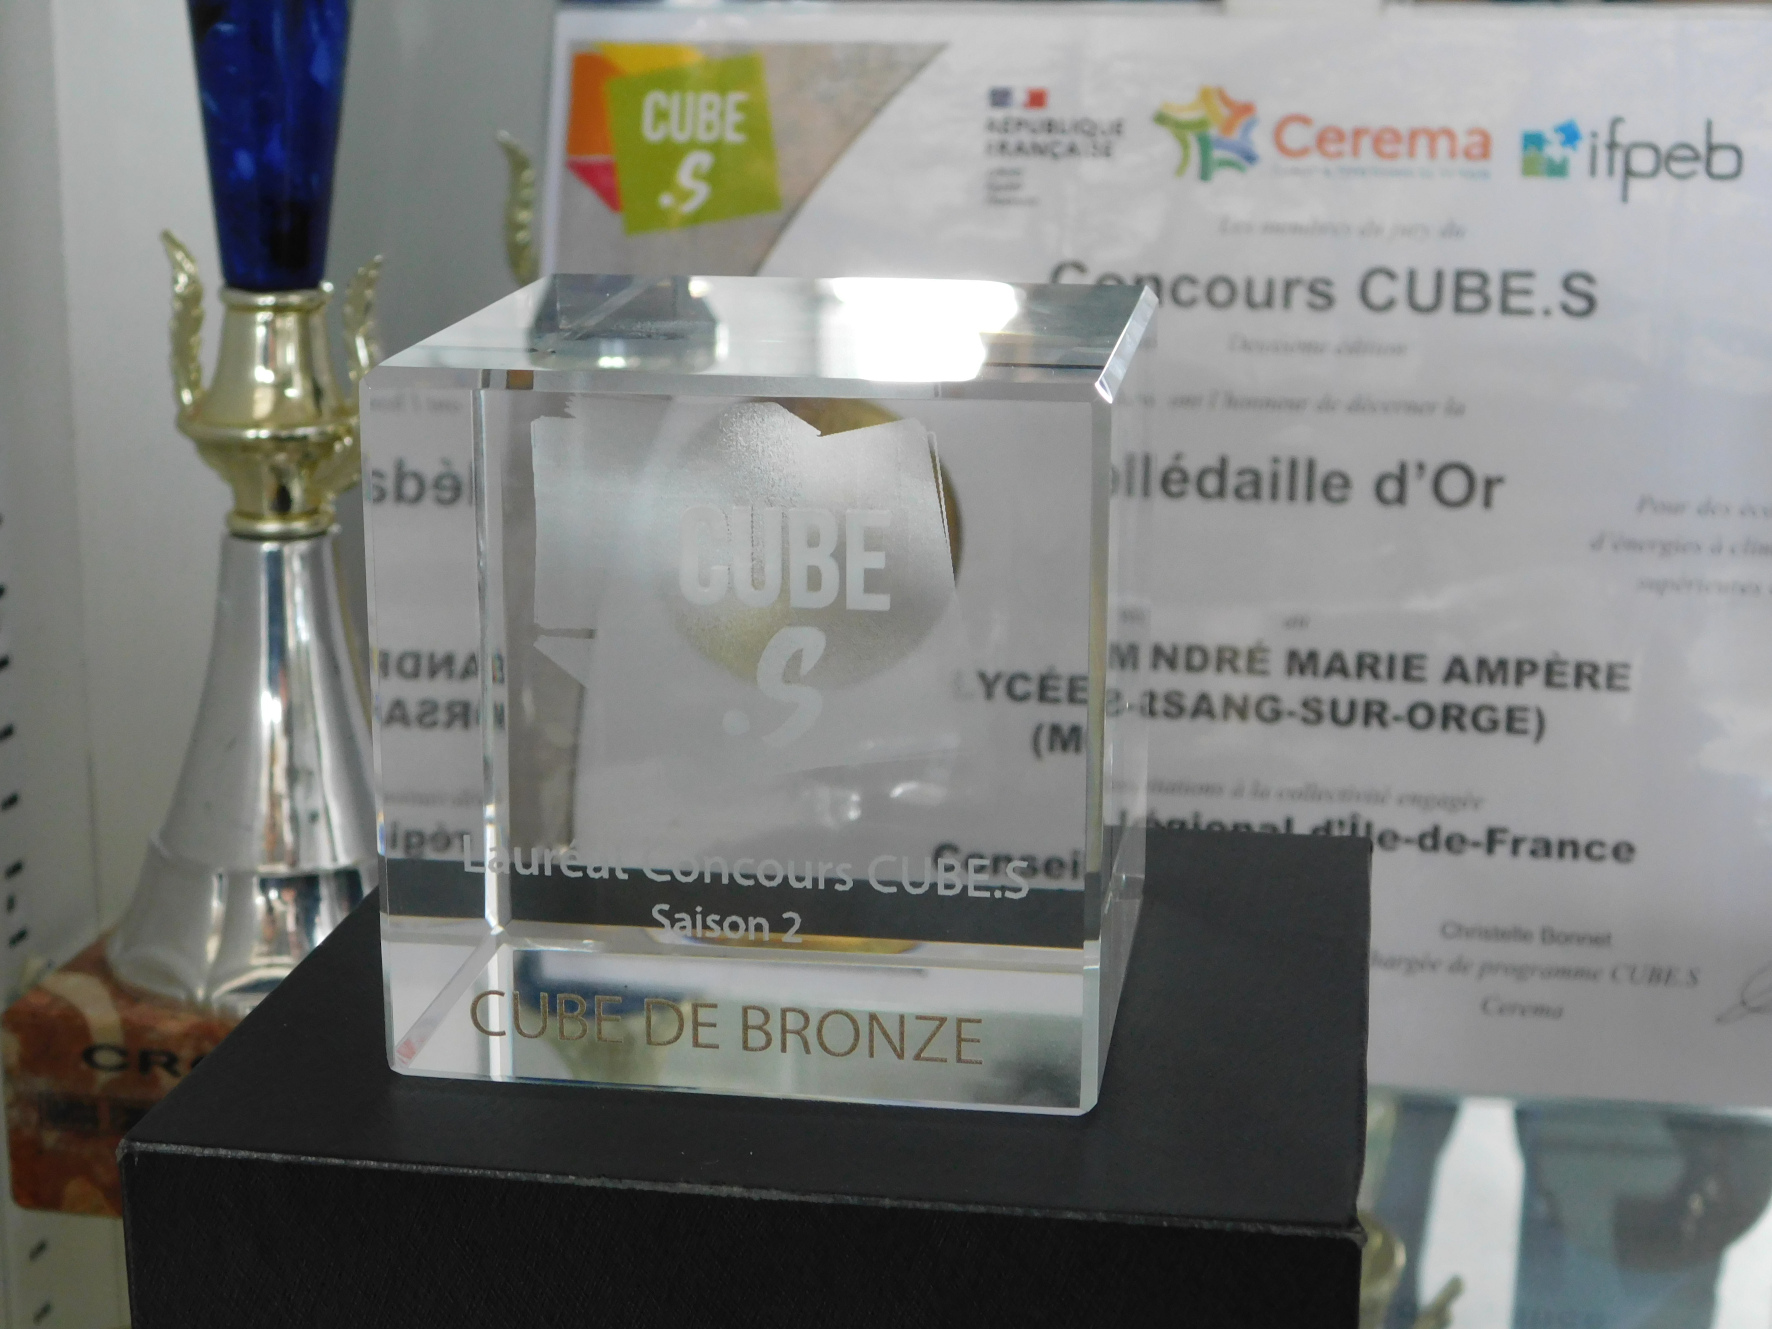 Le lycée lauréat du concours Cube.S : il a obtenu un Cube de bronze